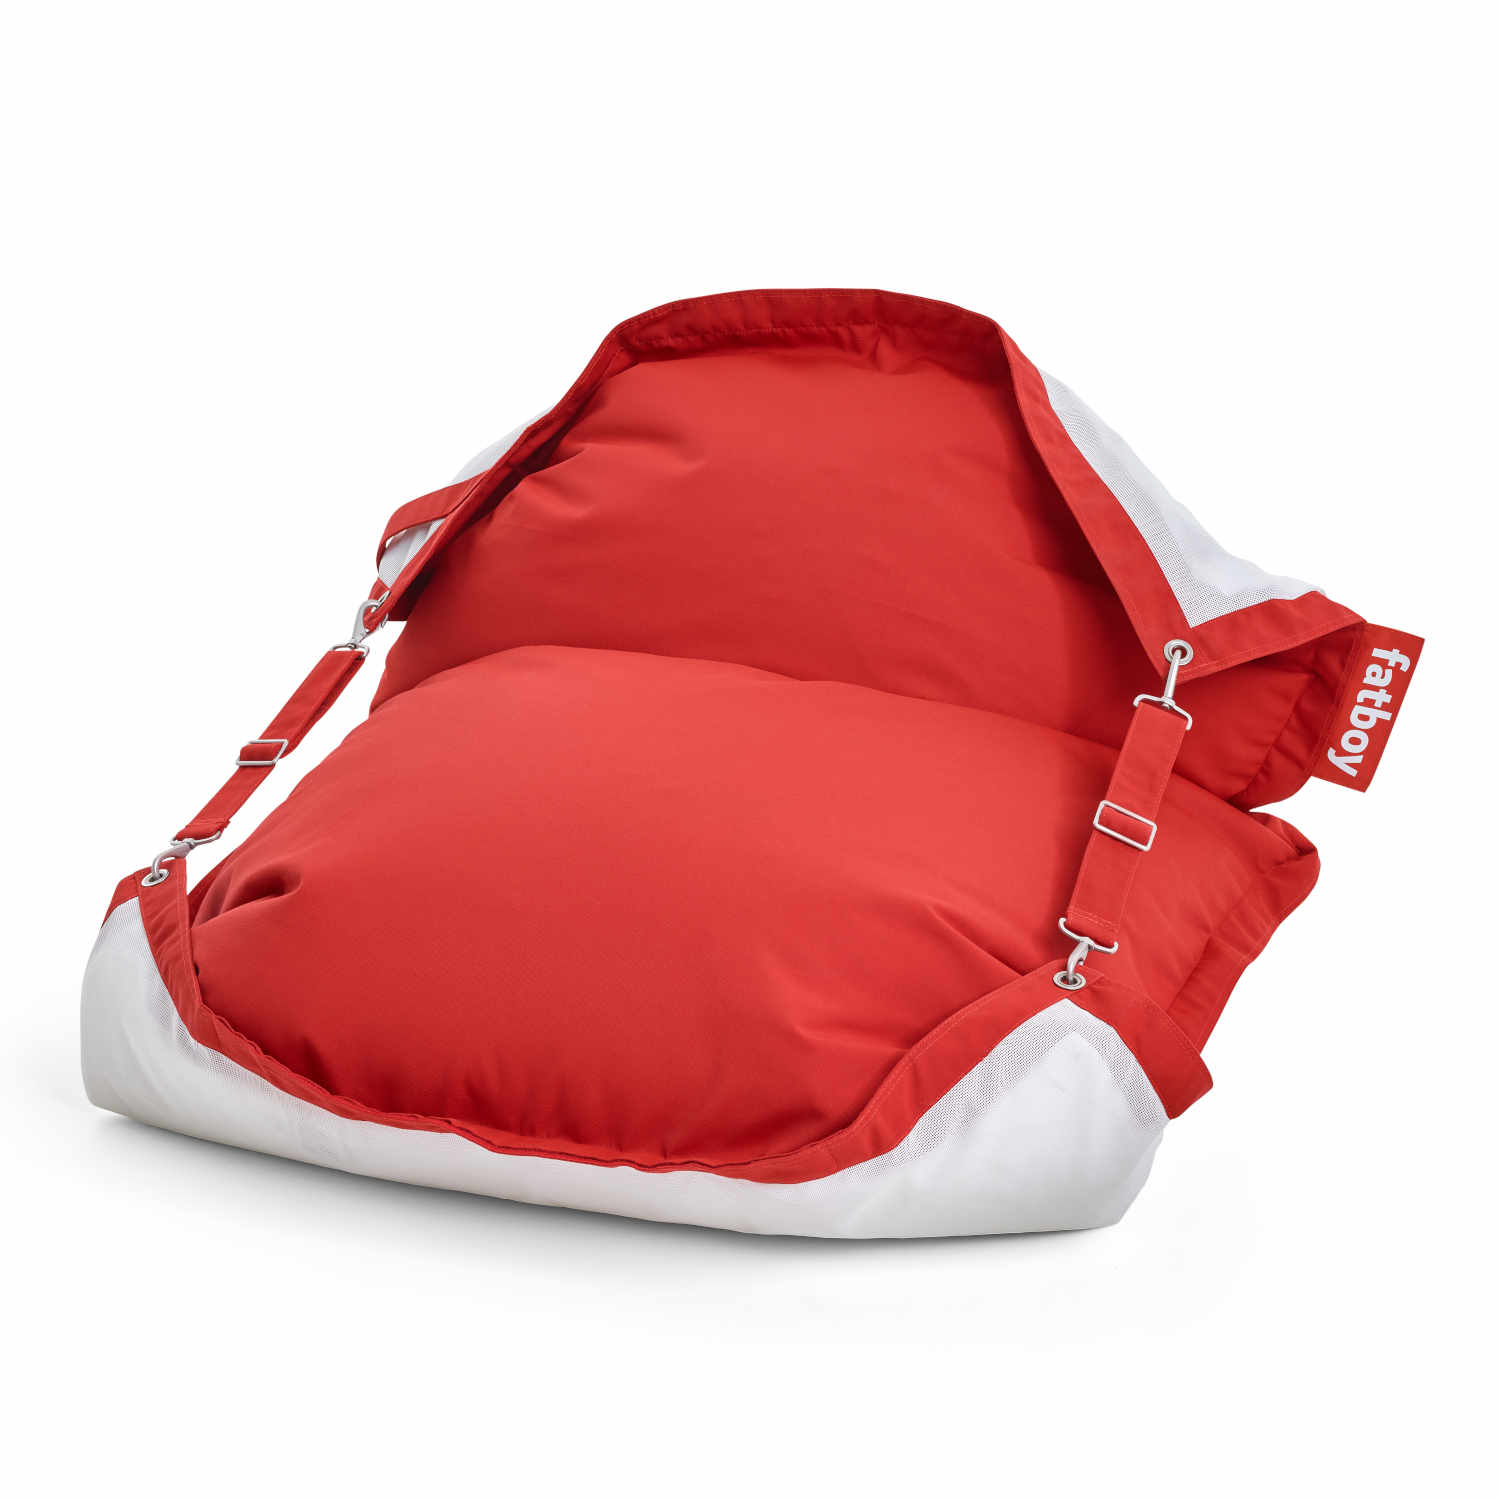 Floatzac Schwimm-Sitzsack, Farbe rot von Fatboy